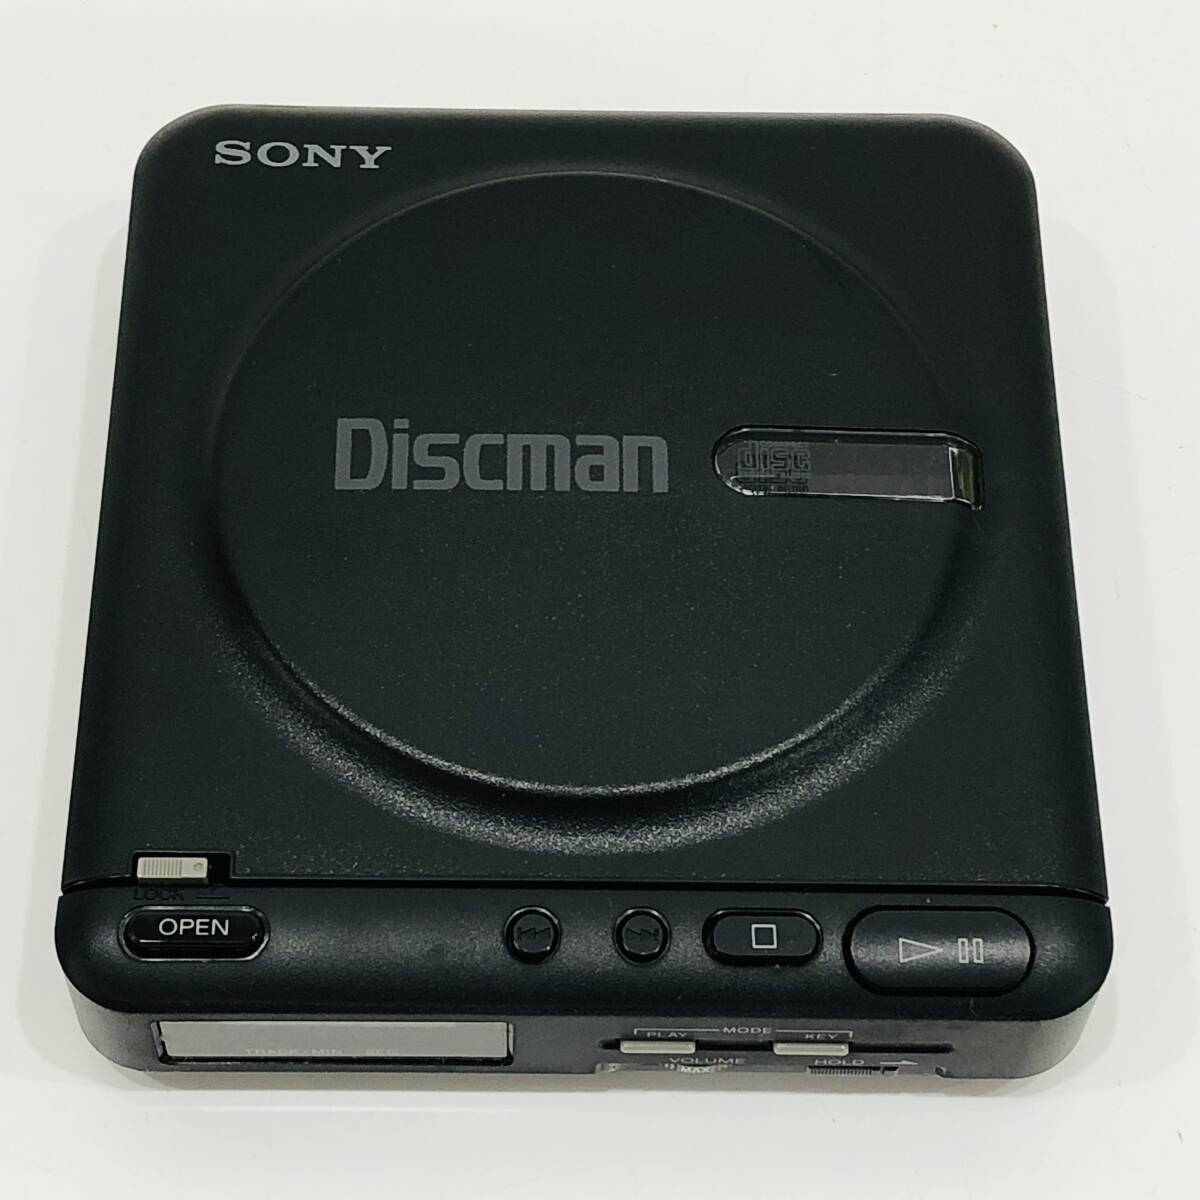 ●ソニー D-20 コンパクトディスクコンパクトプレーヤー SONY ブラック Discman ポータブルCDプレーヤー 音響機器 オーディオ S2843_画像1